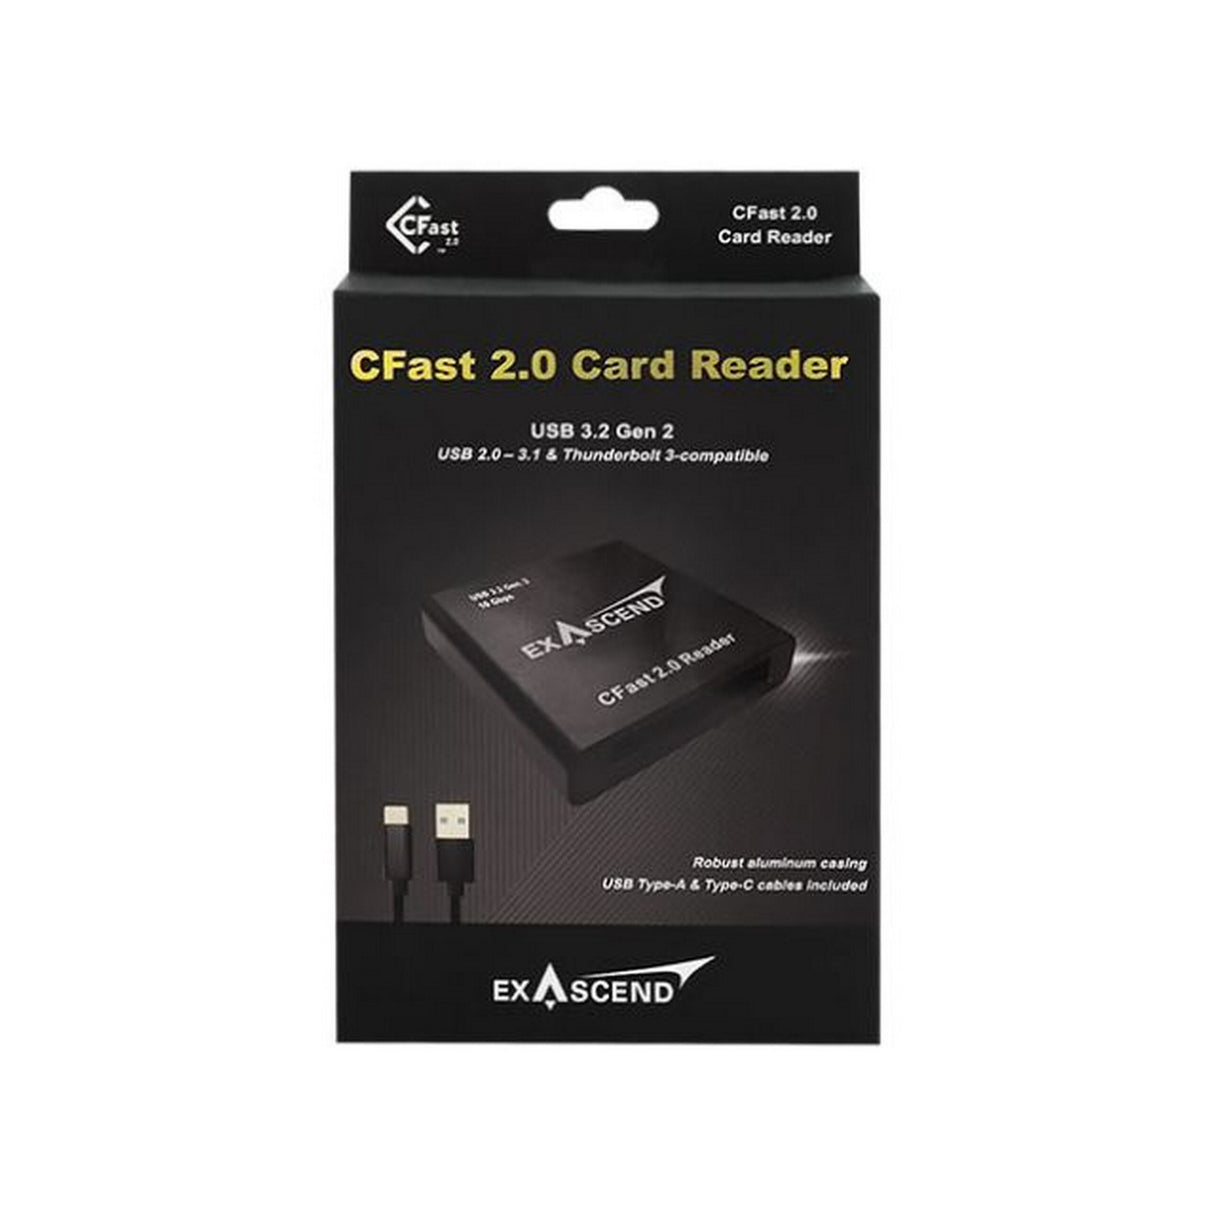 Exascend Cfast 2.0 Card Reader, Black